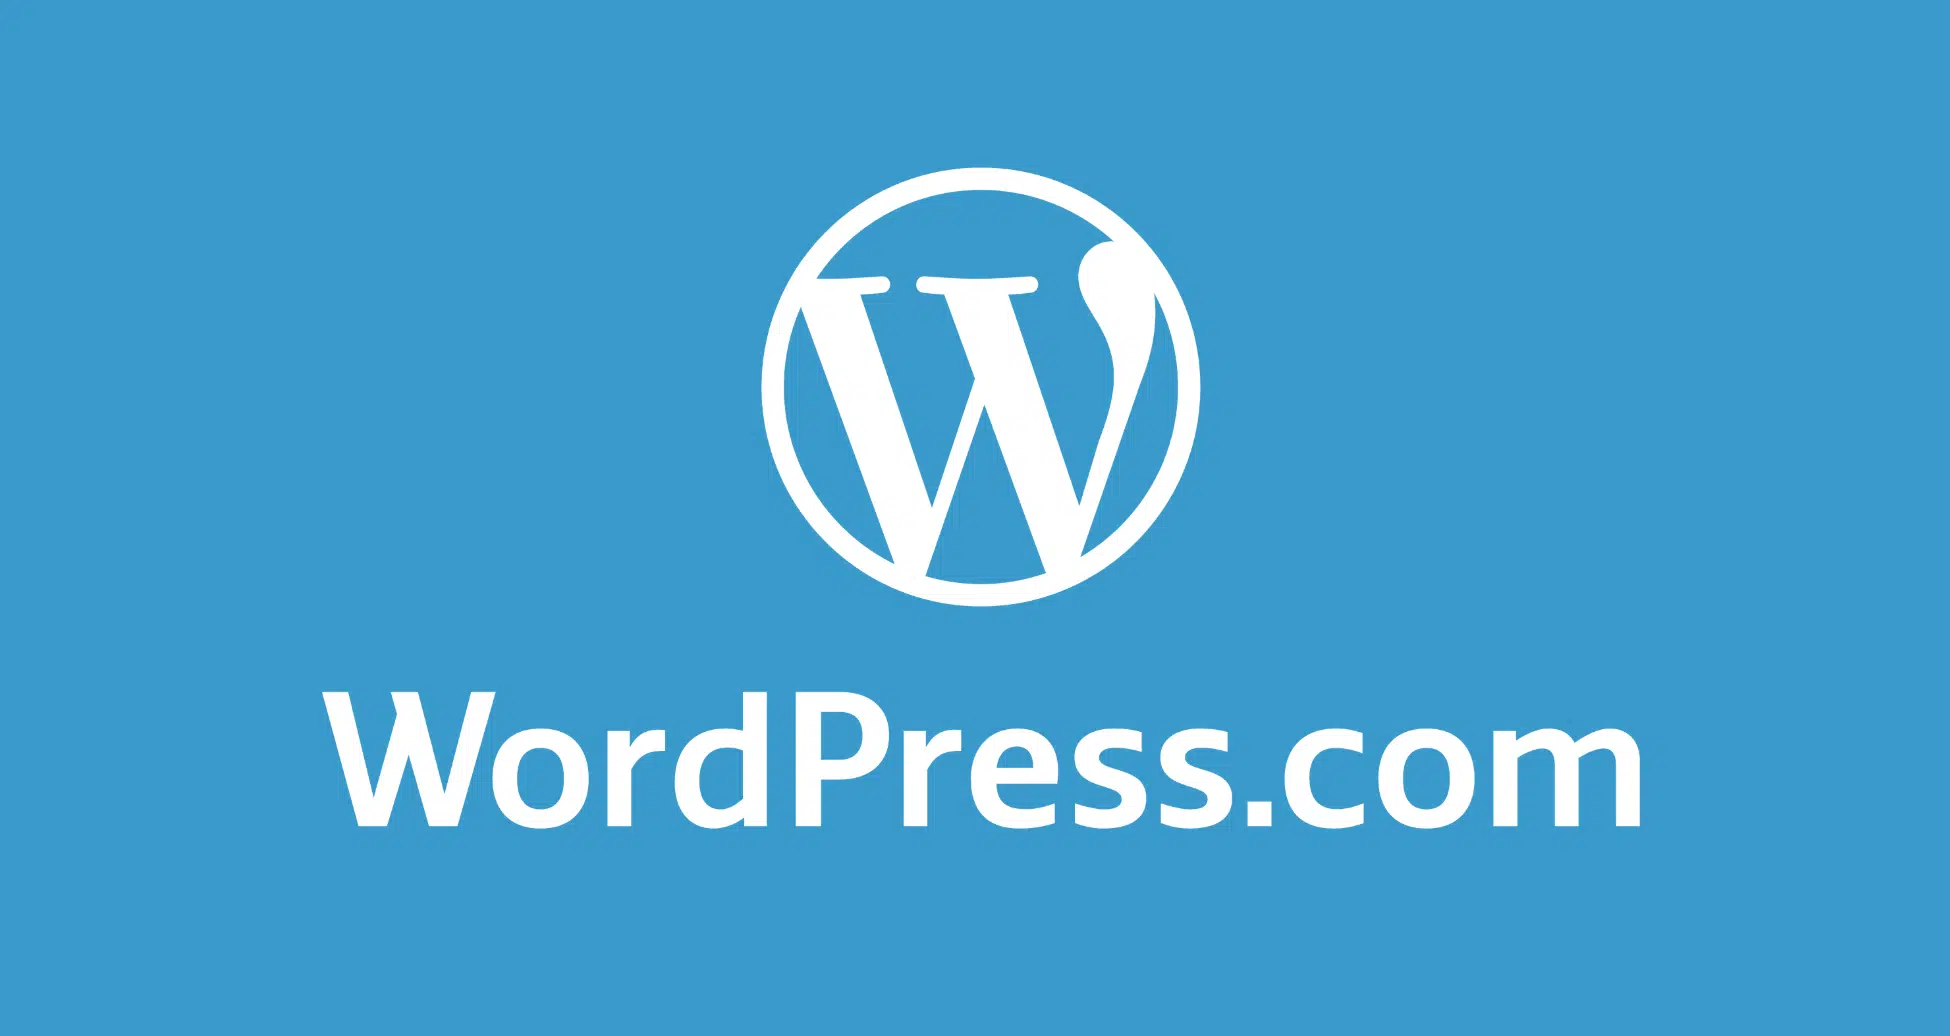 WordPress.com nimmt große unangekündigte Preisänderungen vor, senkt die Grenzen für den kostenlosen Speicherplatz - WP Tavern